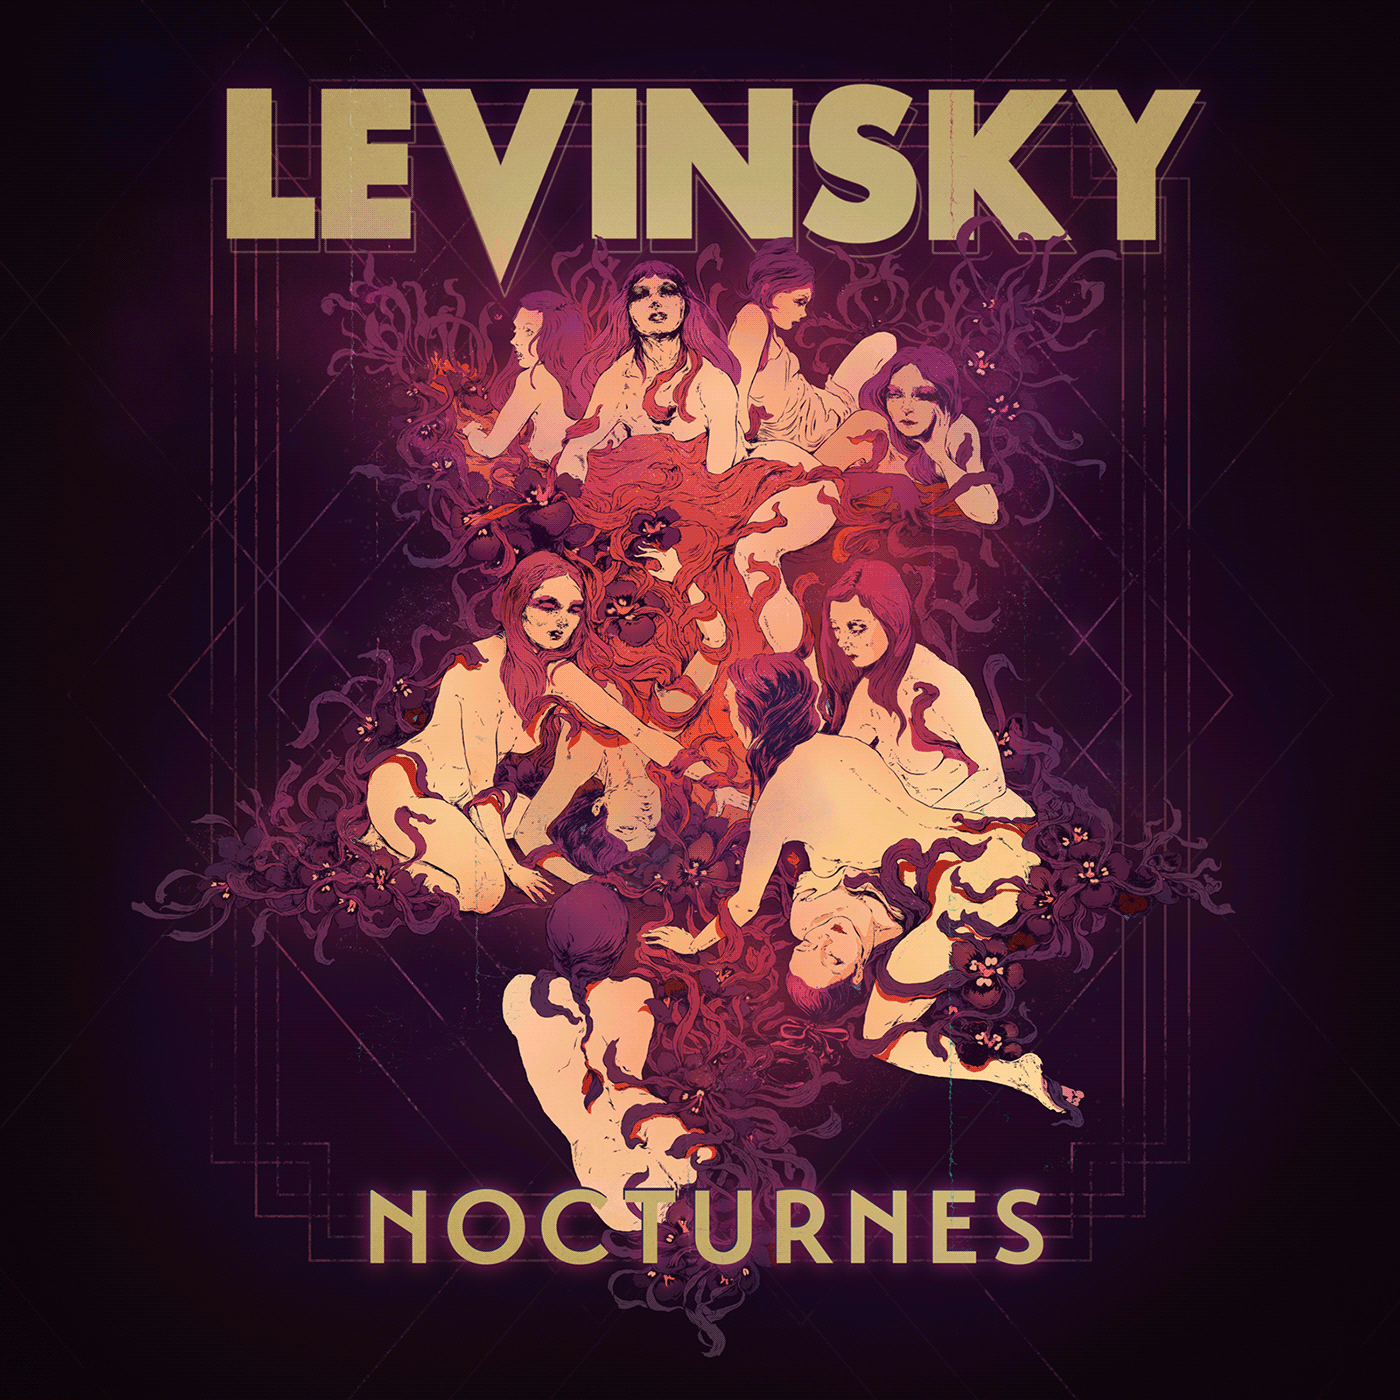 album art Cover Art cover illustration ILLUSTRATION  ink inkdrawing Levinsky Nature nocturnes